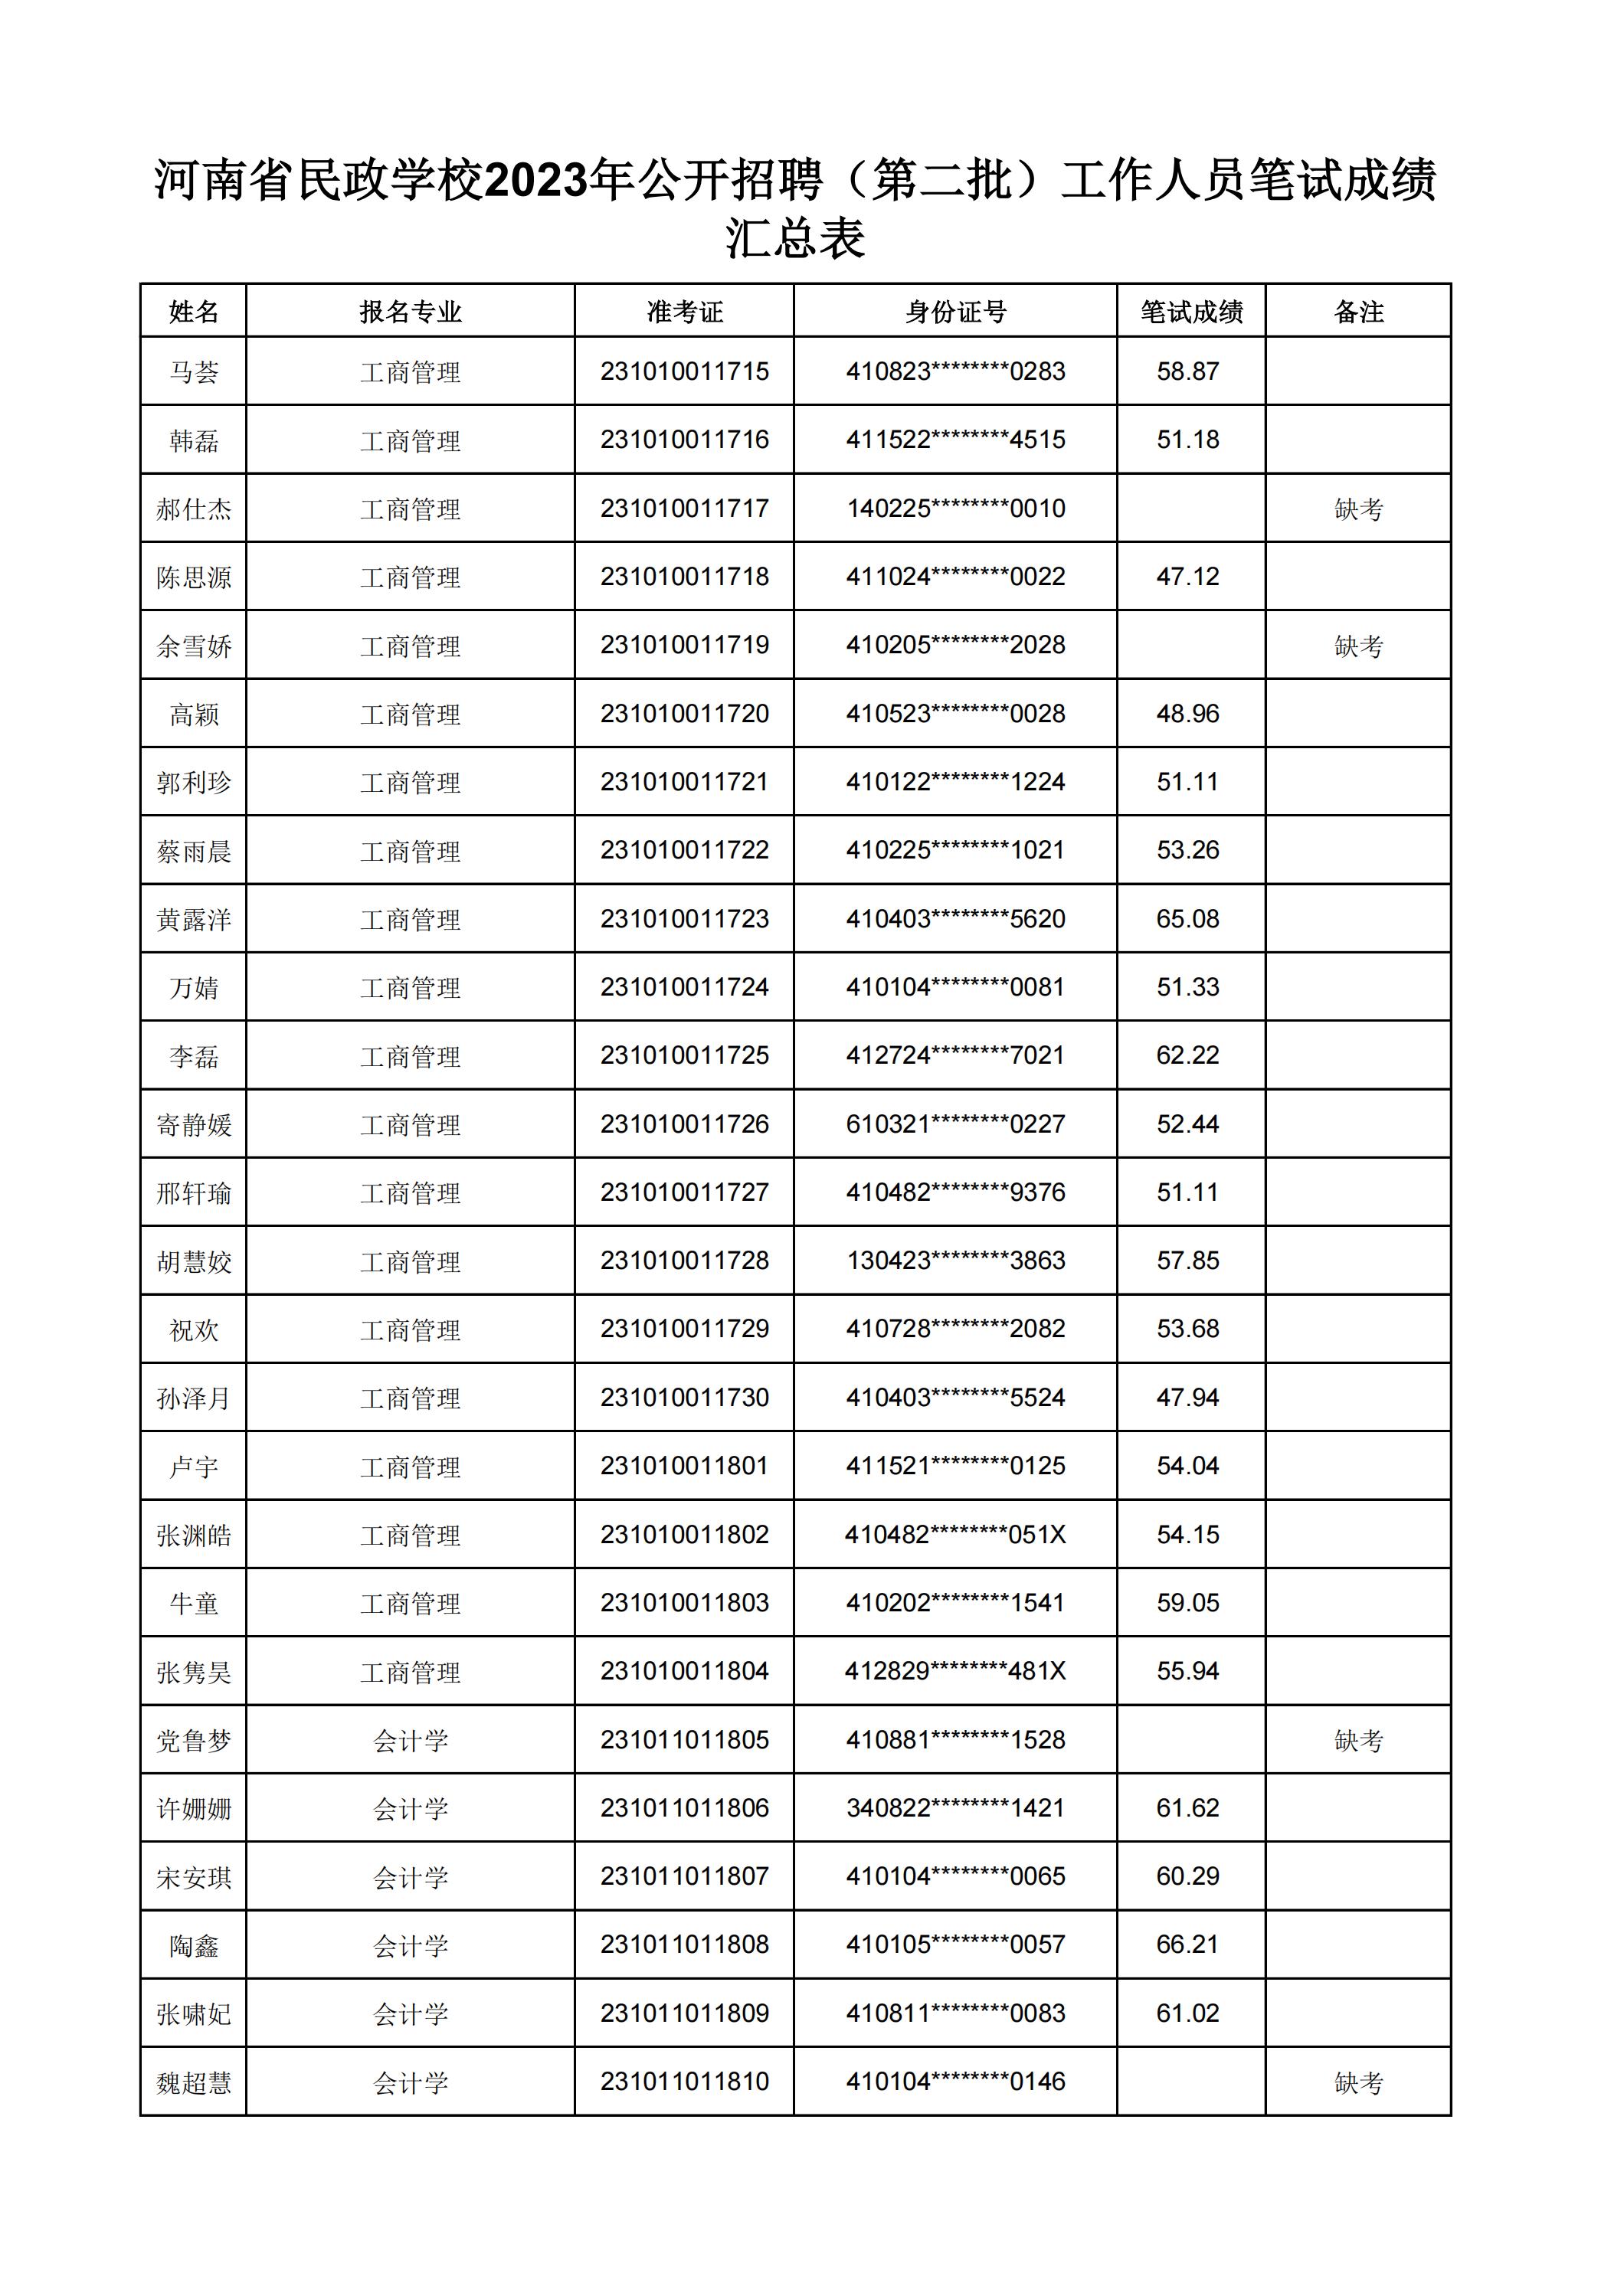 河南省民政学校2023年公开招聘（第二批）工作人员笔试成绩汇总表(2)_19.jpg